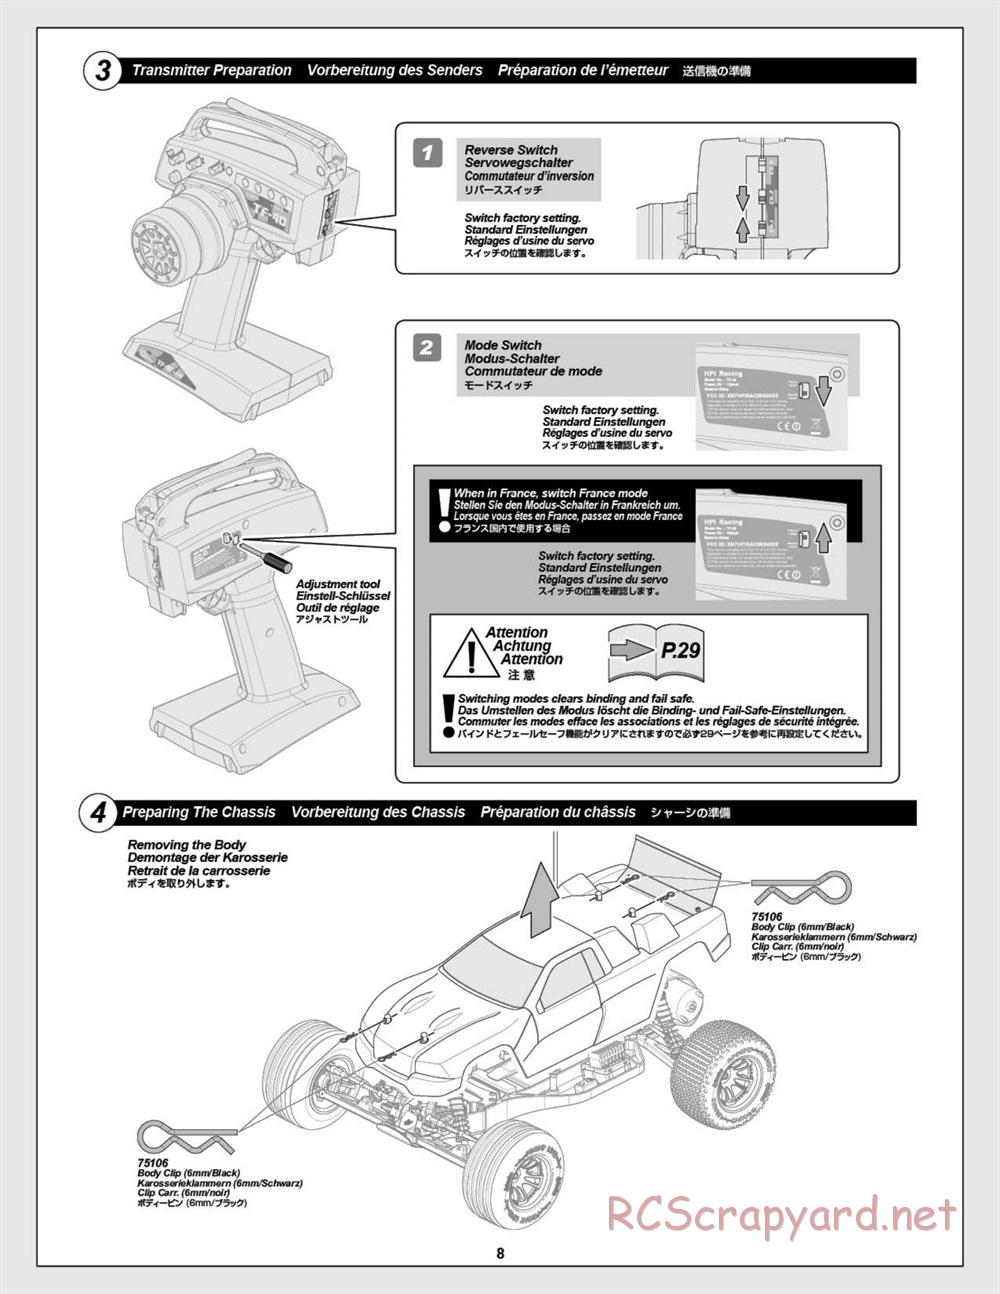 HPI - E-Firestorm-10T - Manual - Page 8